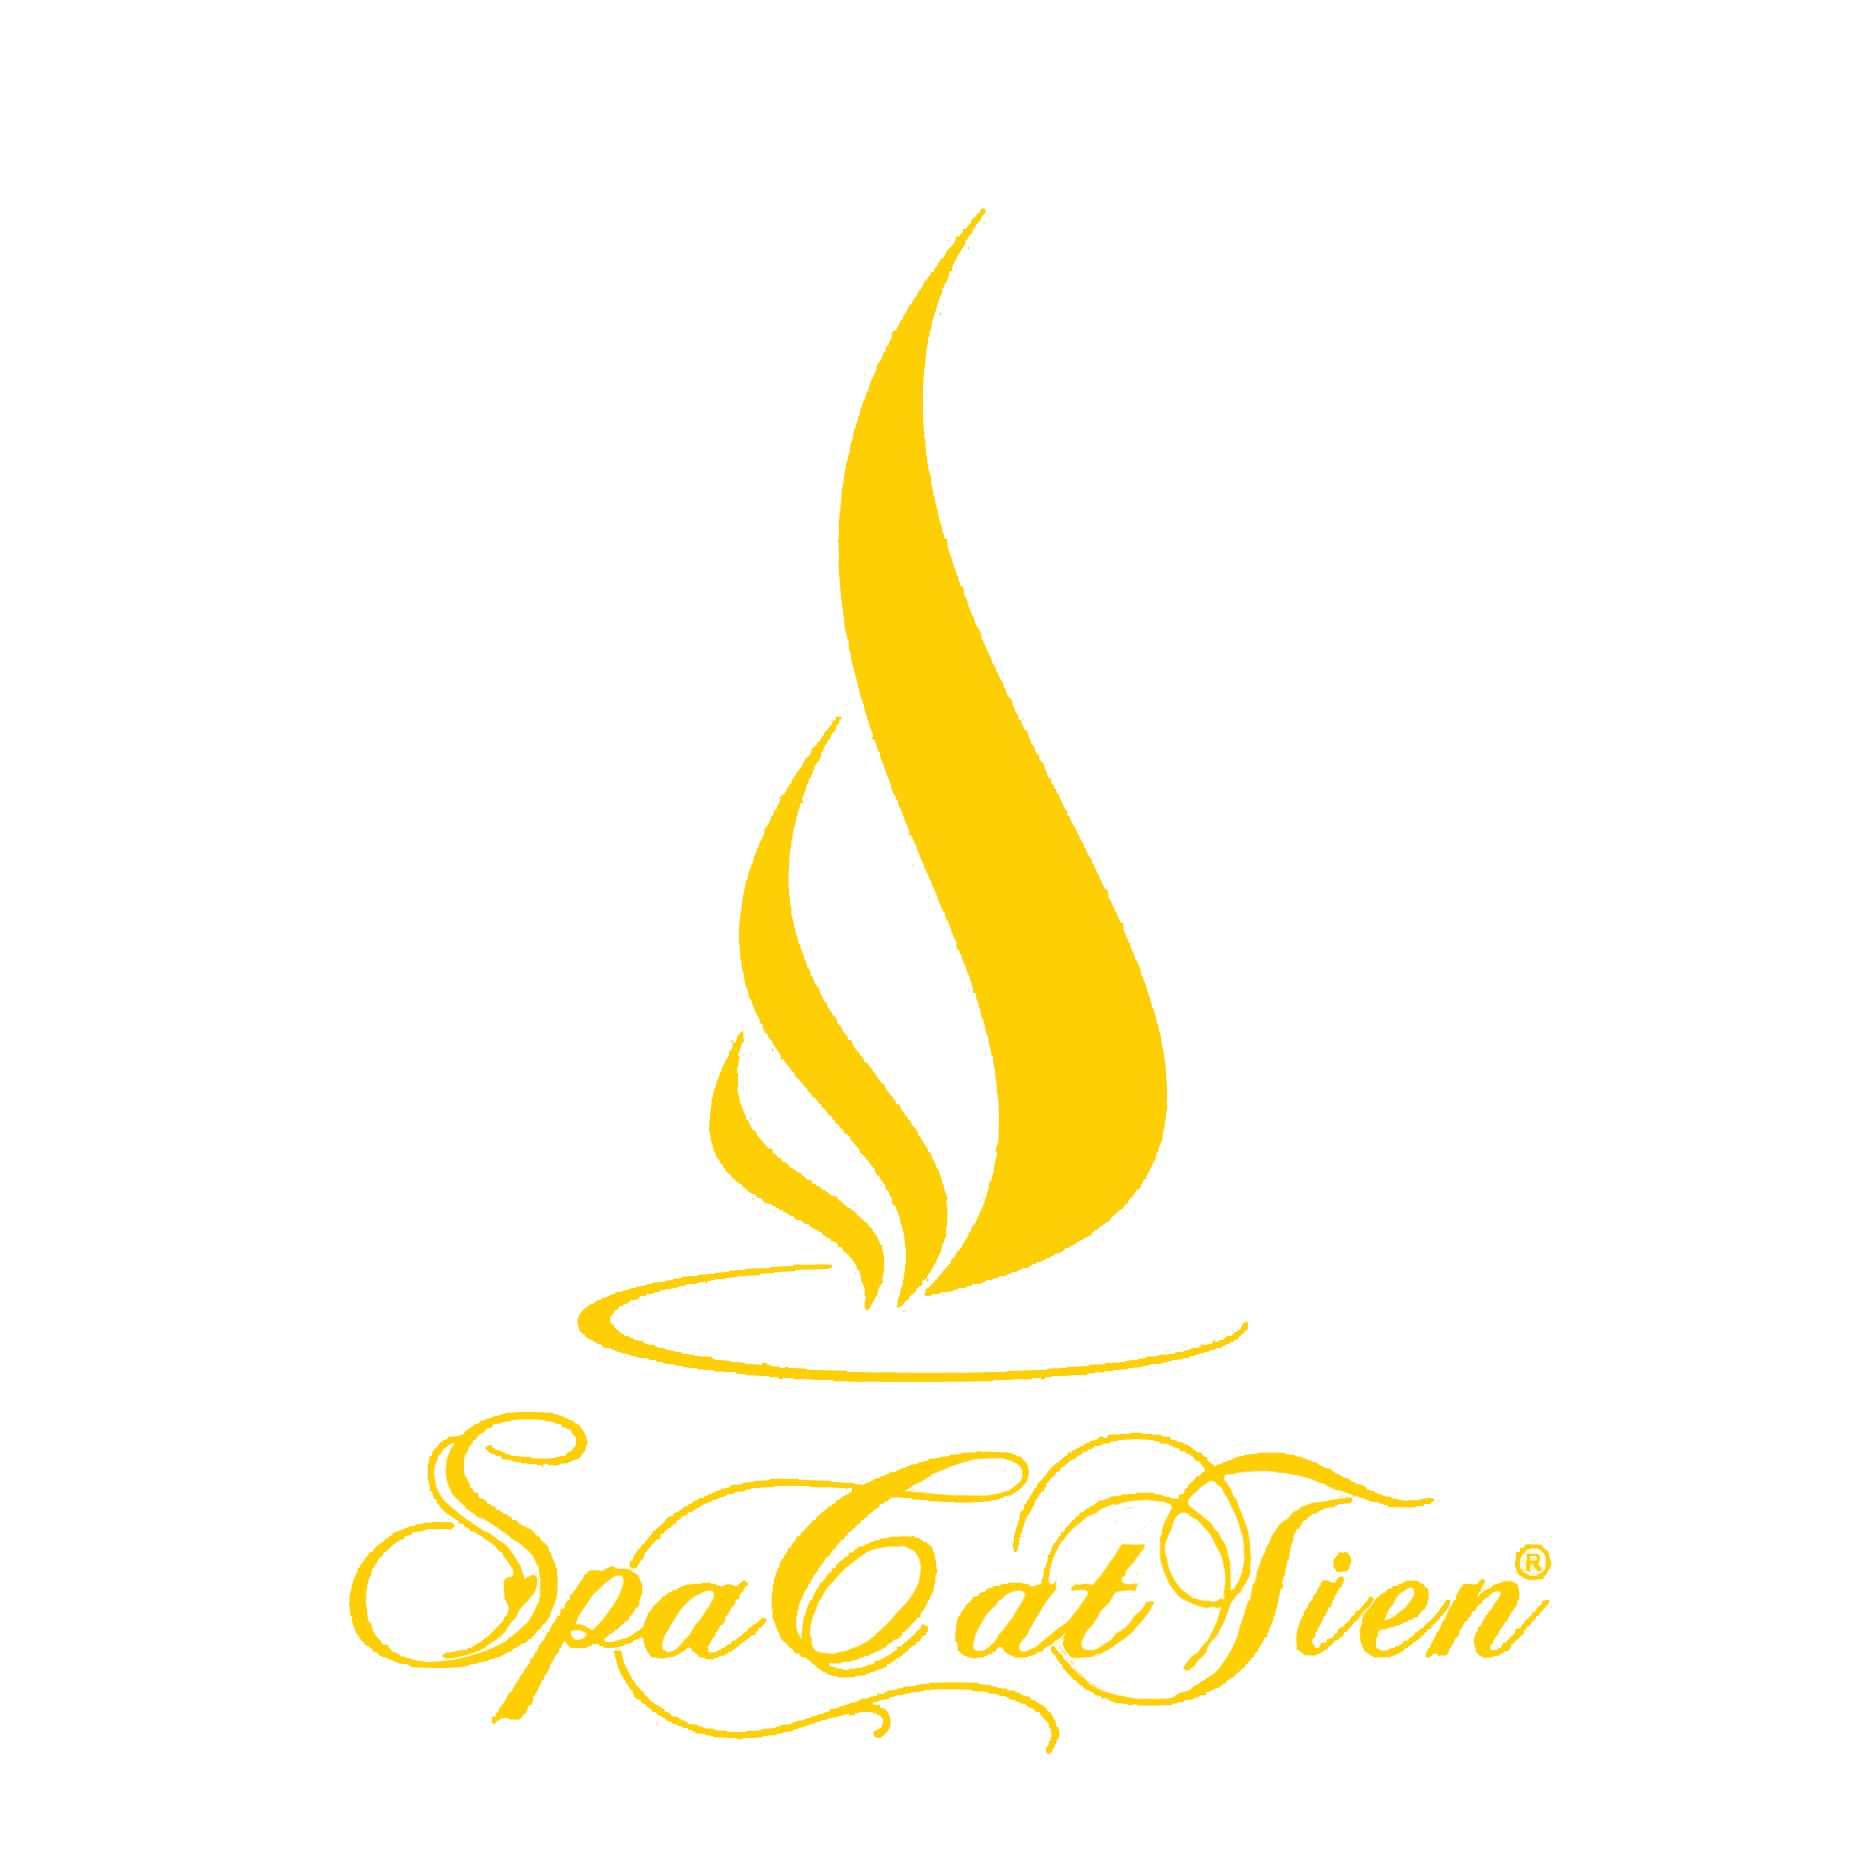 Logo Spa Cát Tiên - Yellow